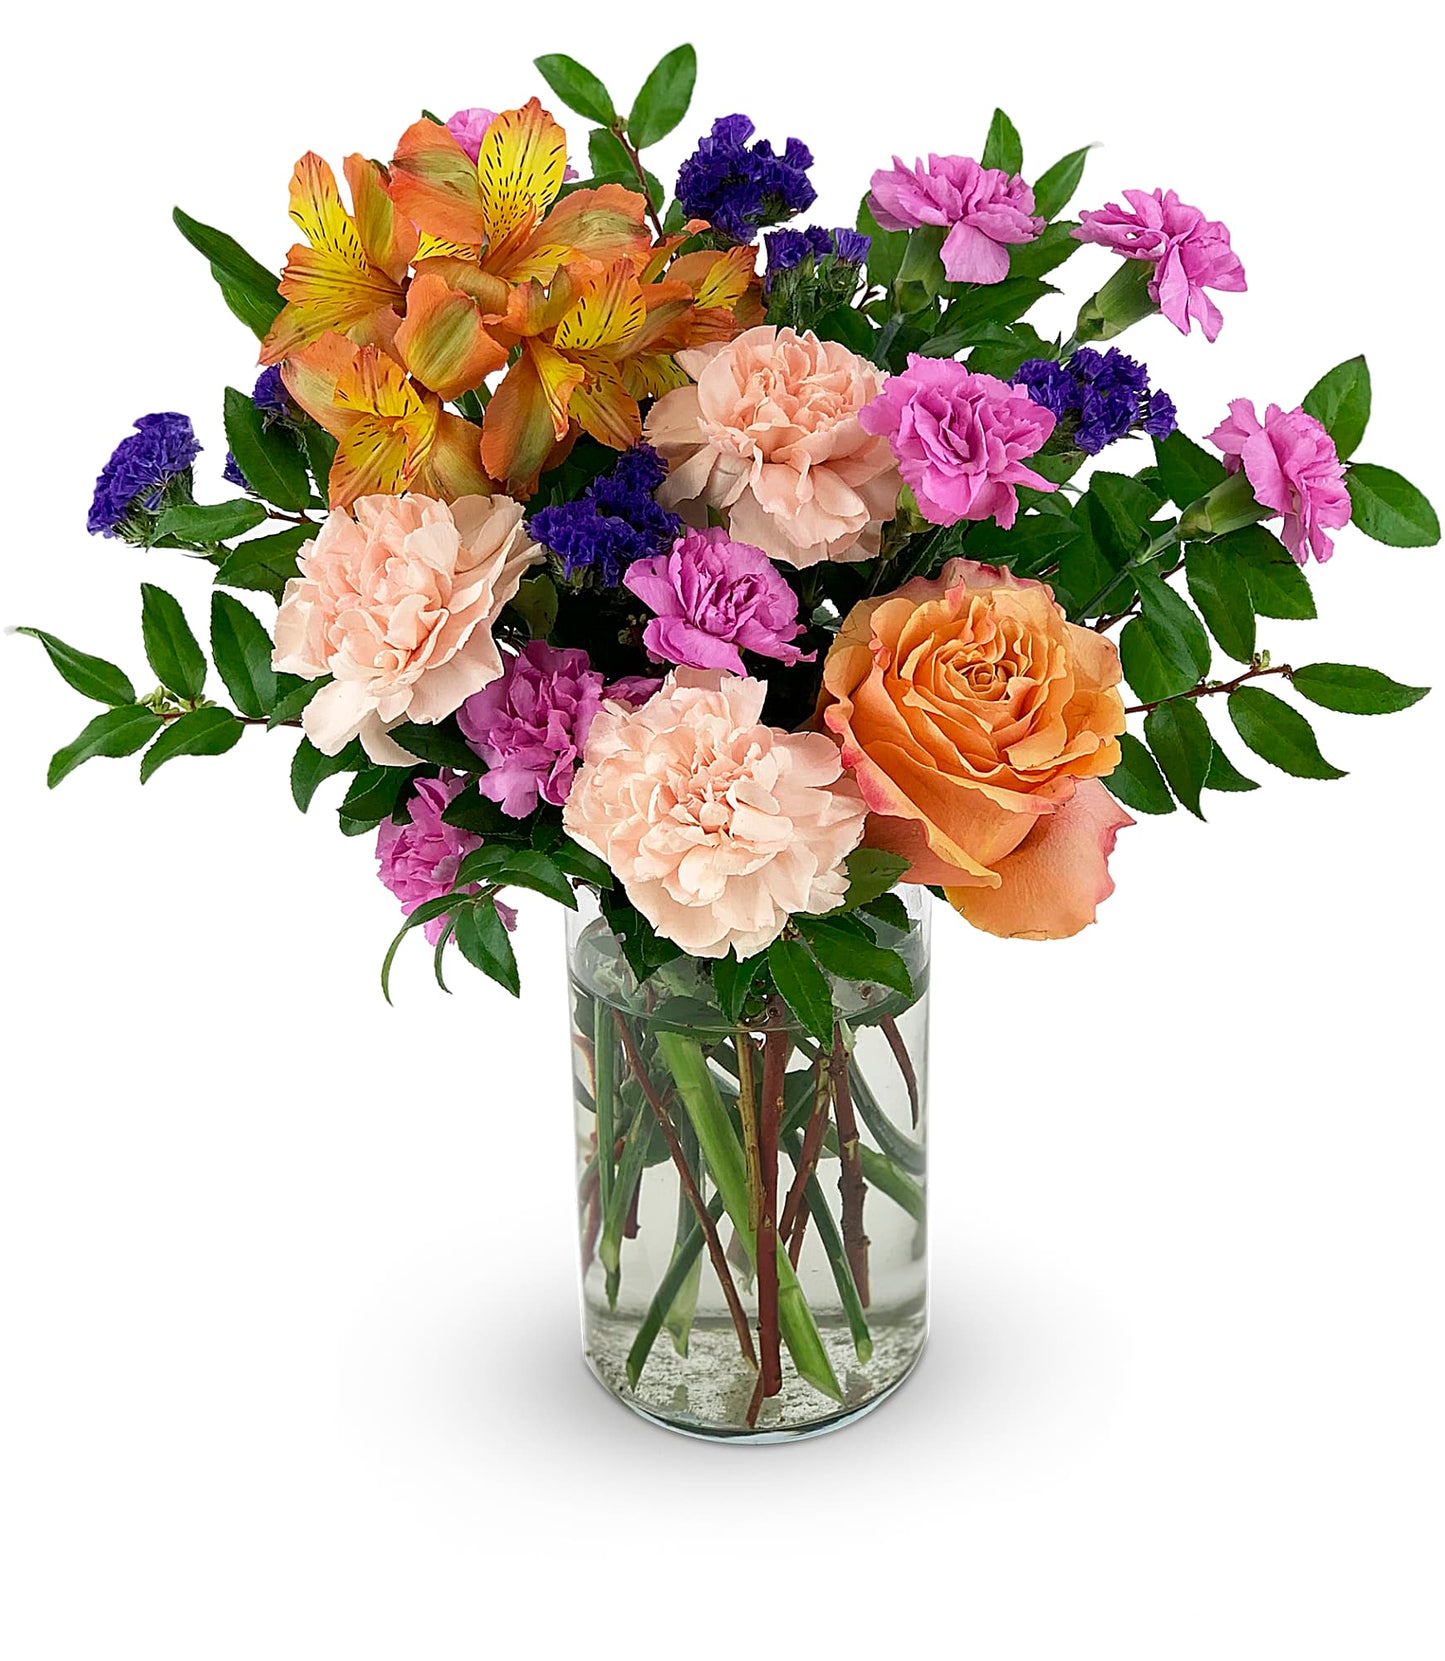 [FRESH FLOWER]Pet Friendly Fields of Love Bouquet